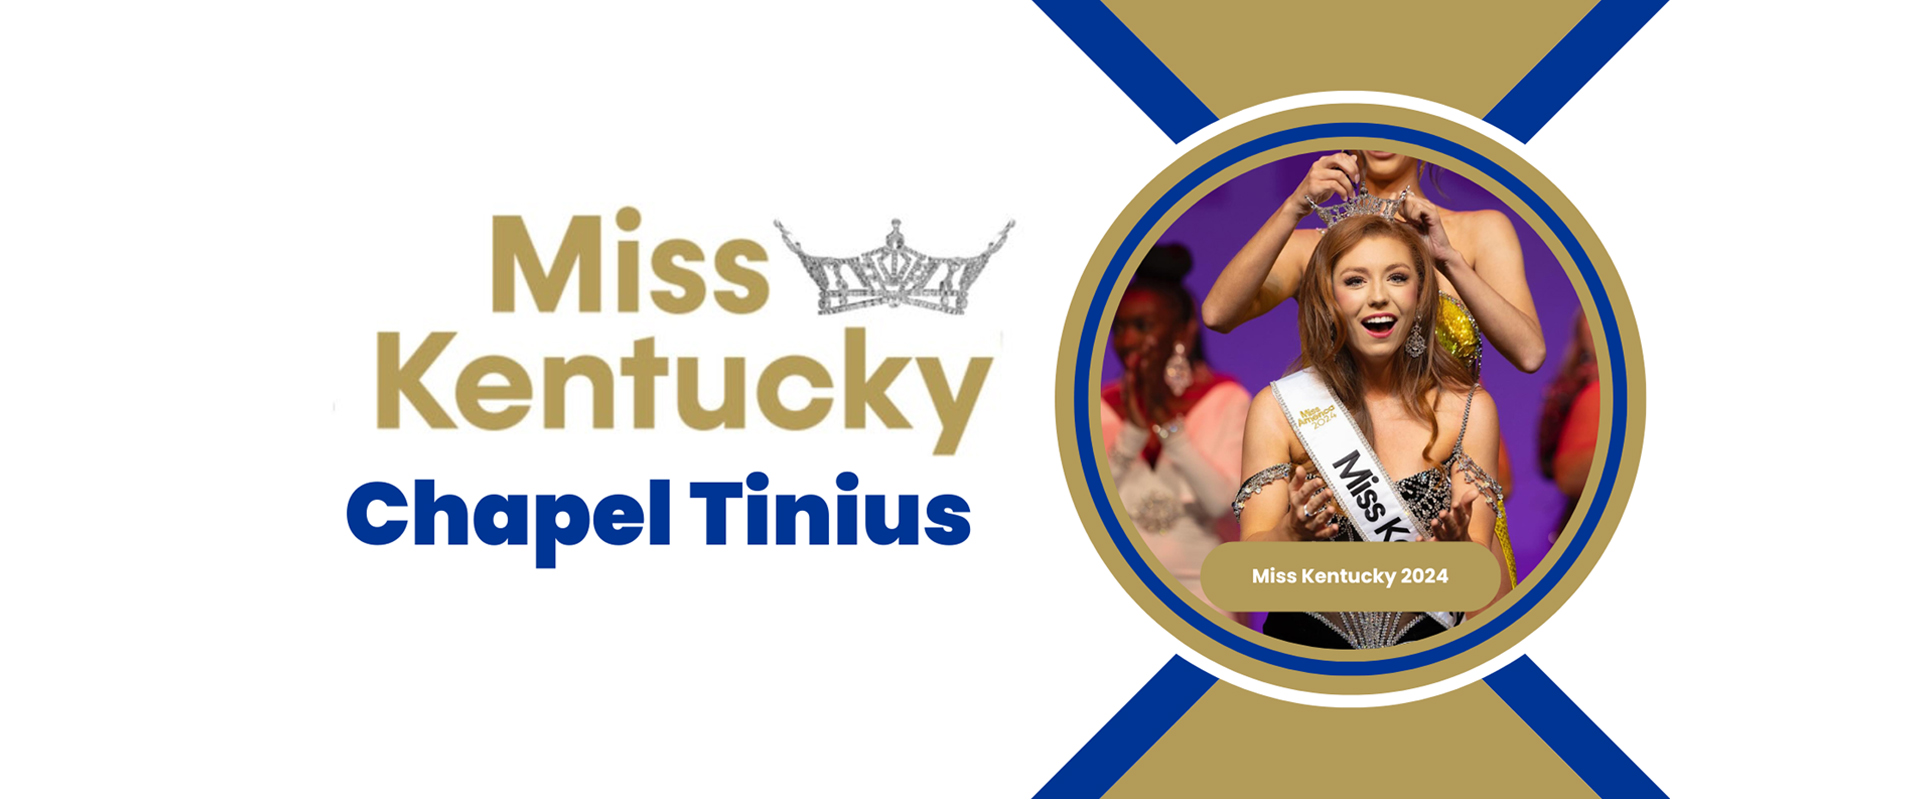 Miss Kentucky - Chapel Tinius